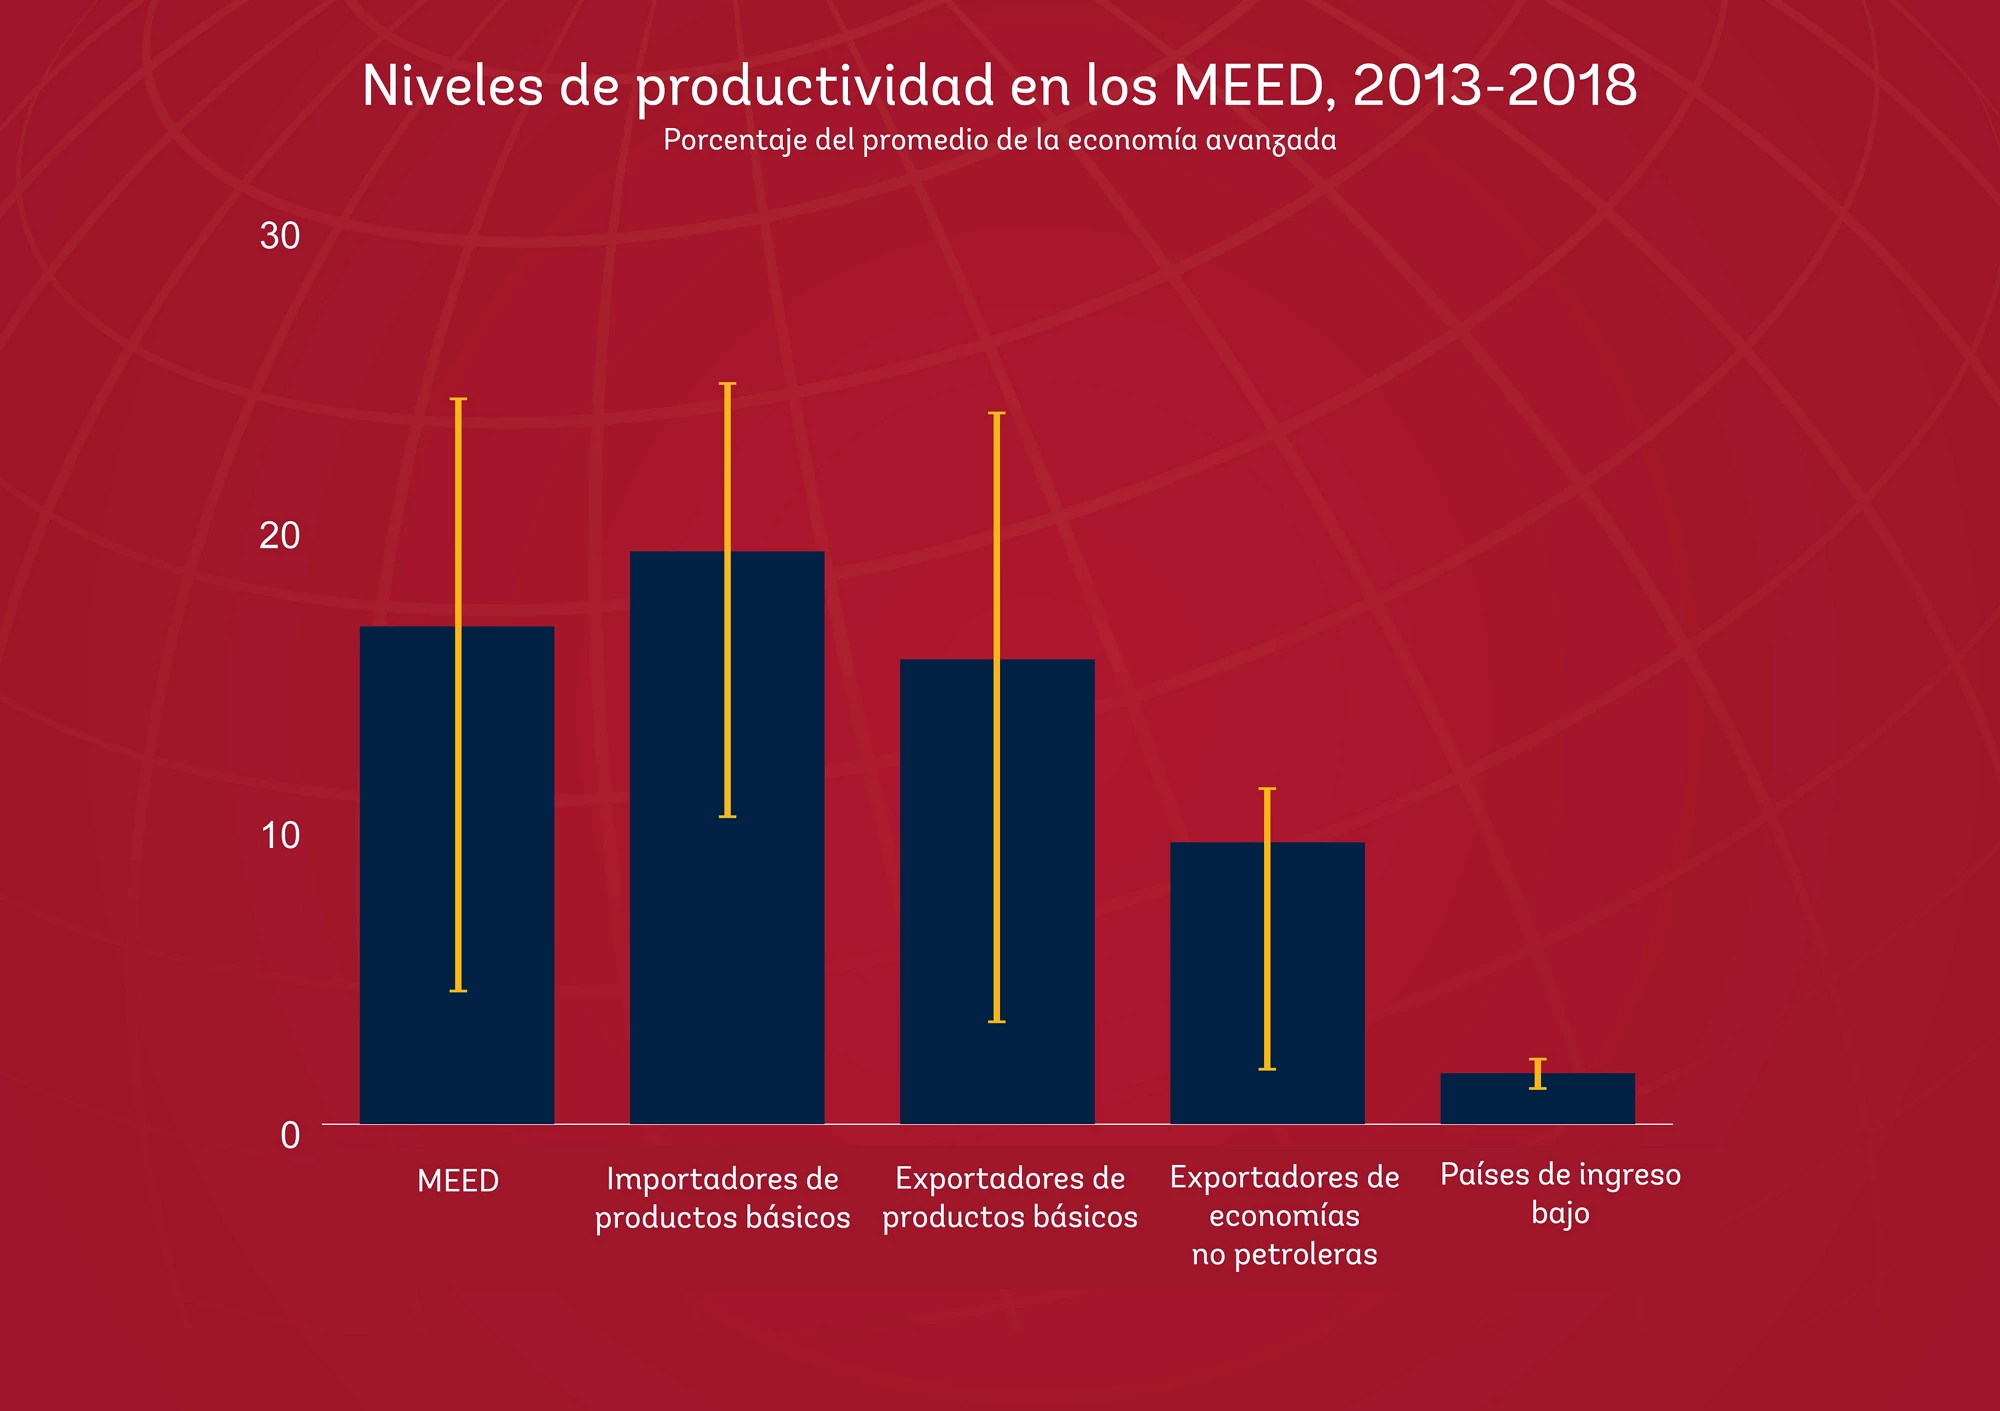 Niveles de productividad de los MEED 2013-2018